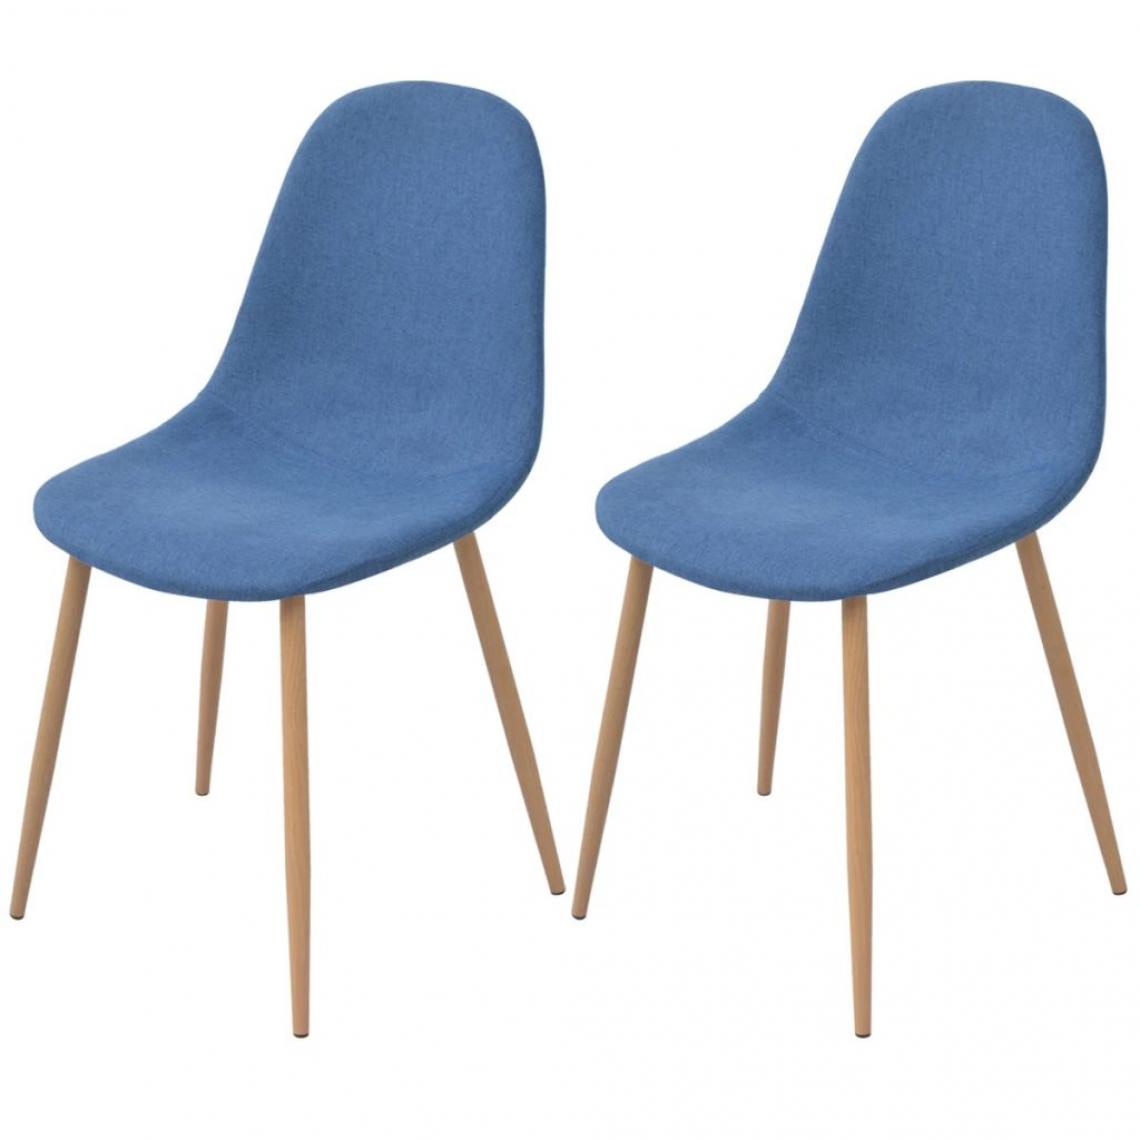 Decoshop26 - Lot de 2 chaises de salle à manger cuisine design moderne tissu bleu CDS020232 - Chaises